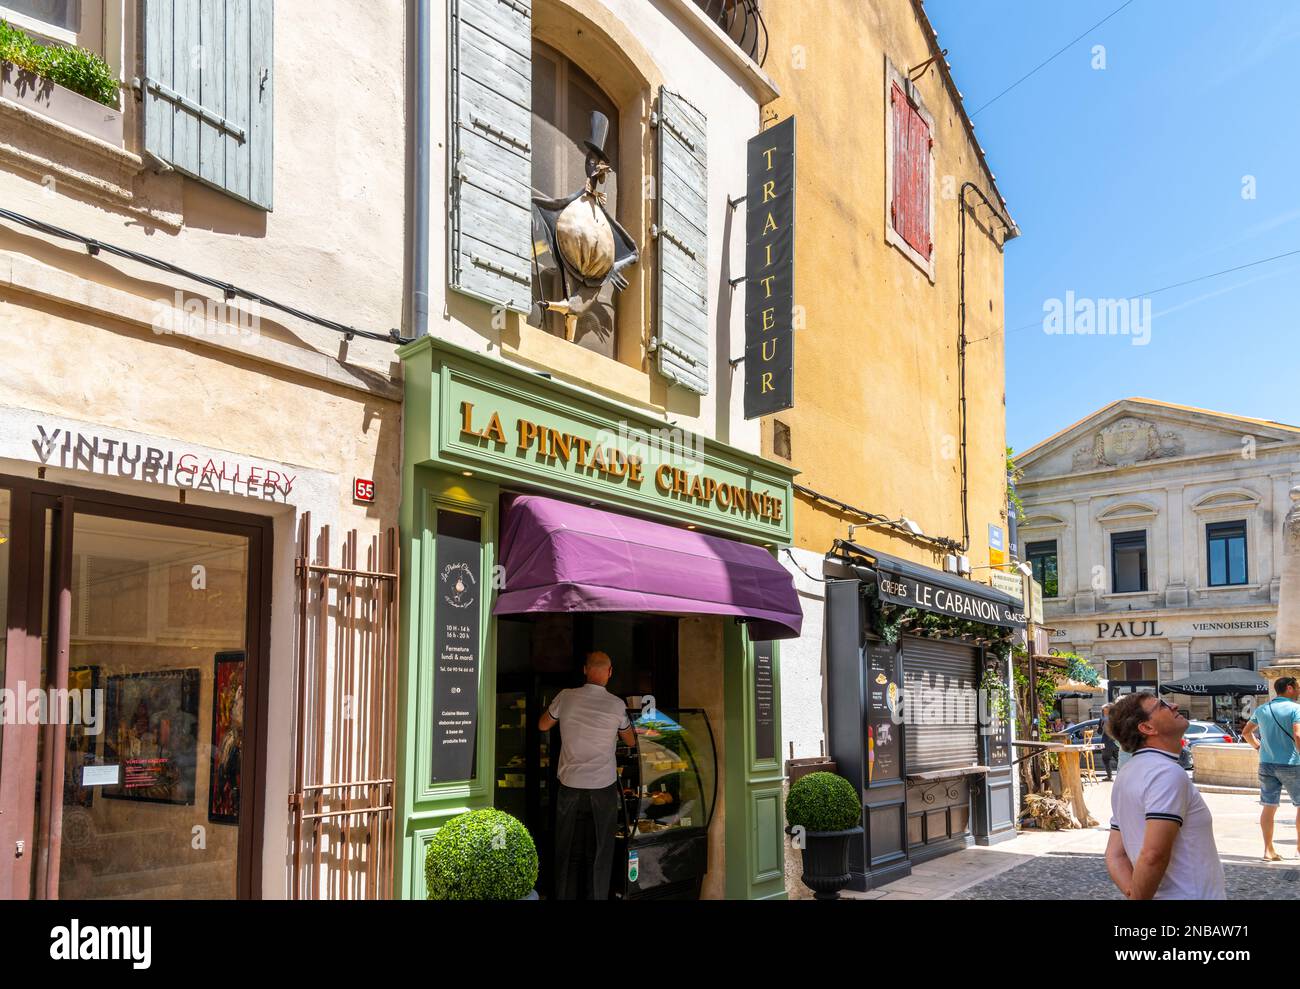 Una delle molte strade e vicoli tipici di colorati caffè e negozi lungo il marciapiede nella storica città di Saint-Remy-de-Provence in una giornata di sole estate. Foto Stock